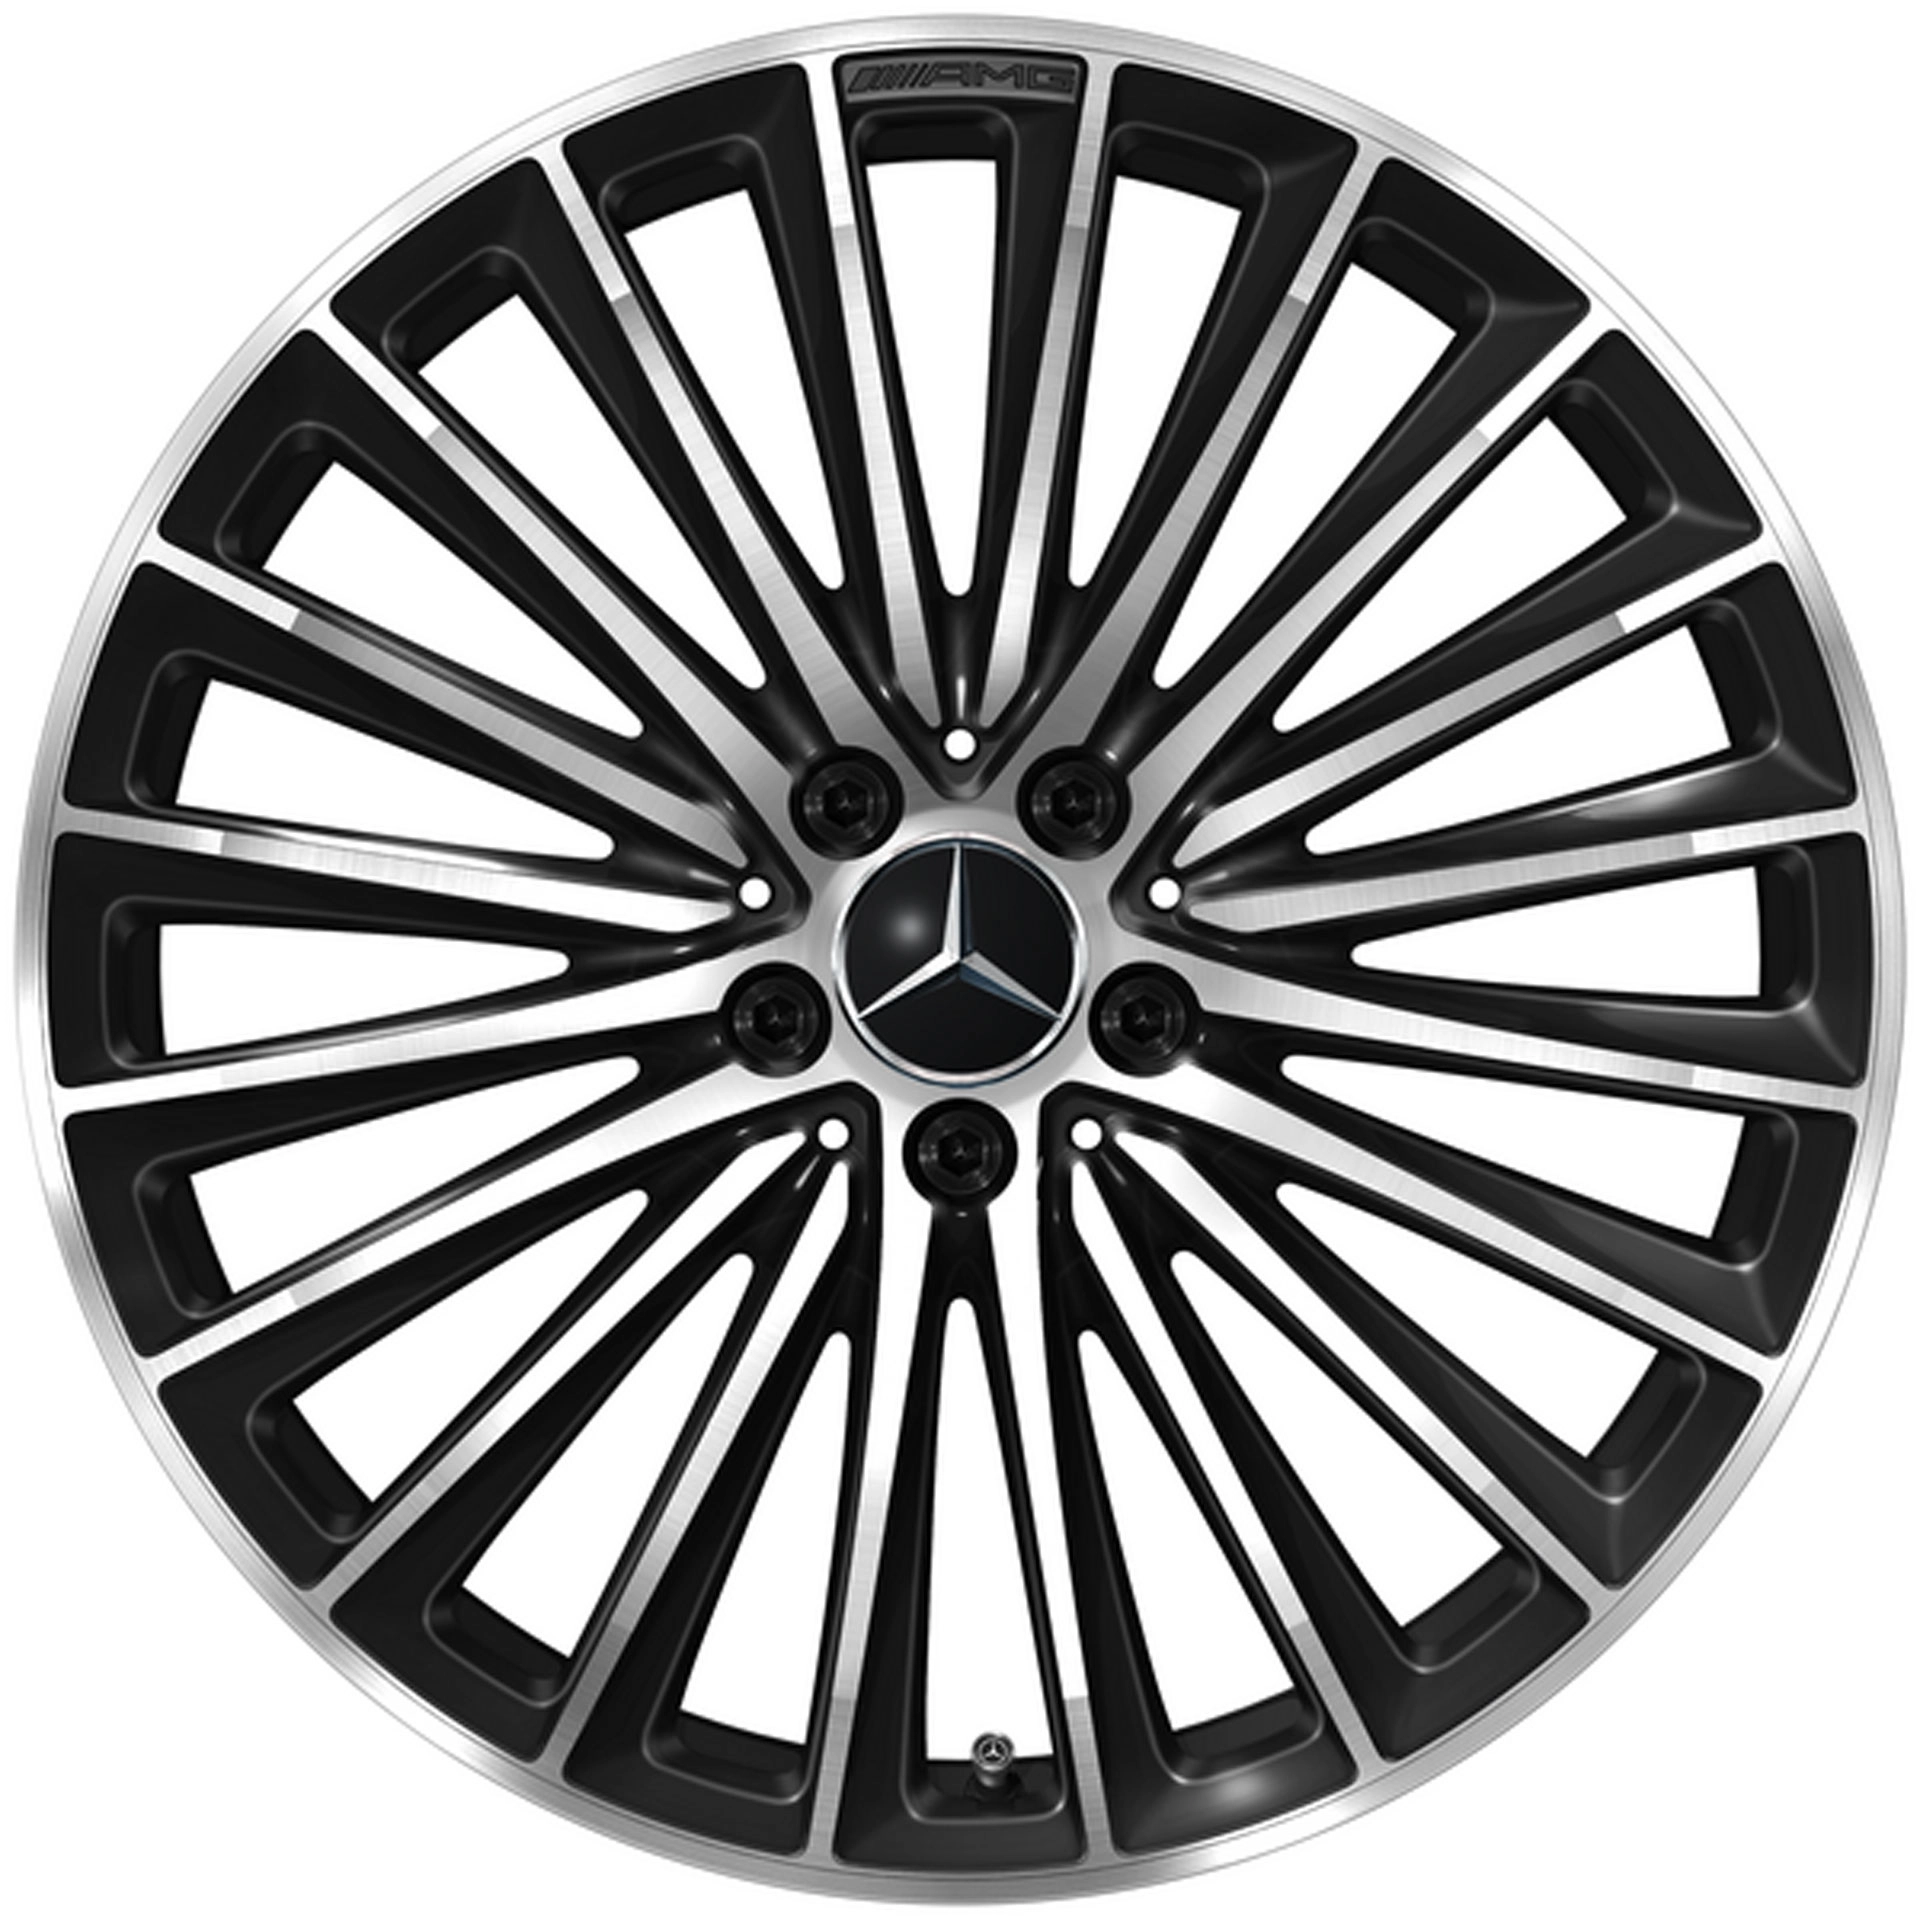 Mercedes-AMG Vielspeichen-Rad 20 Zoll Leichtmetallfelge GLC X254 schwarz glanzgedreht A25440108007X23